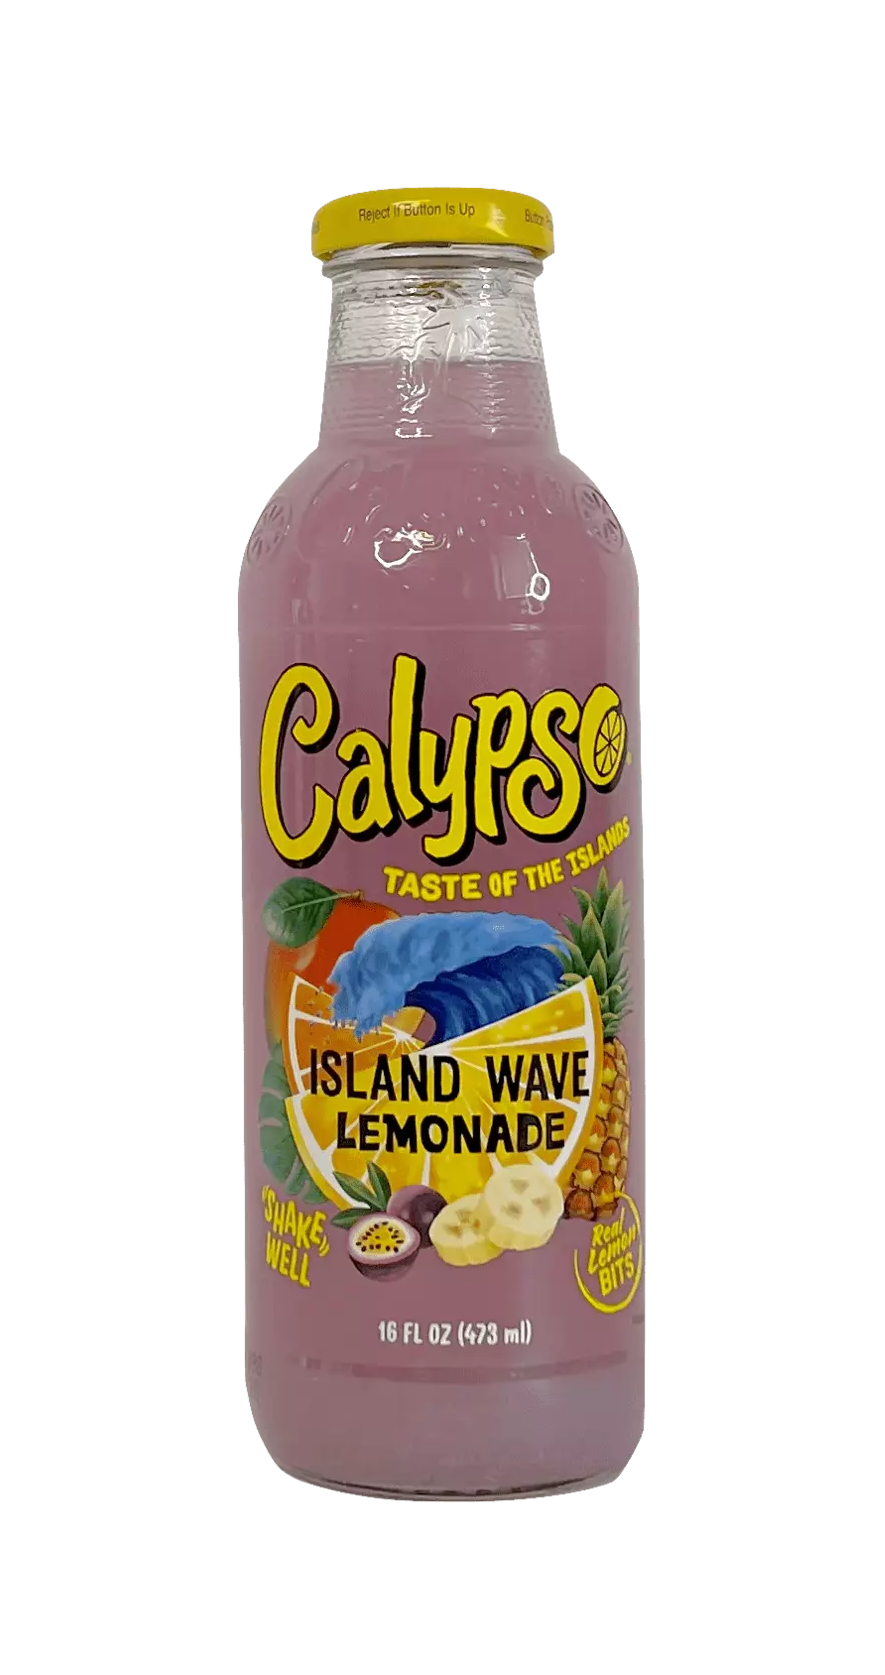 熱帶海洋风味 饮料 473ml Calypso 美国